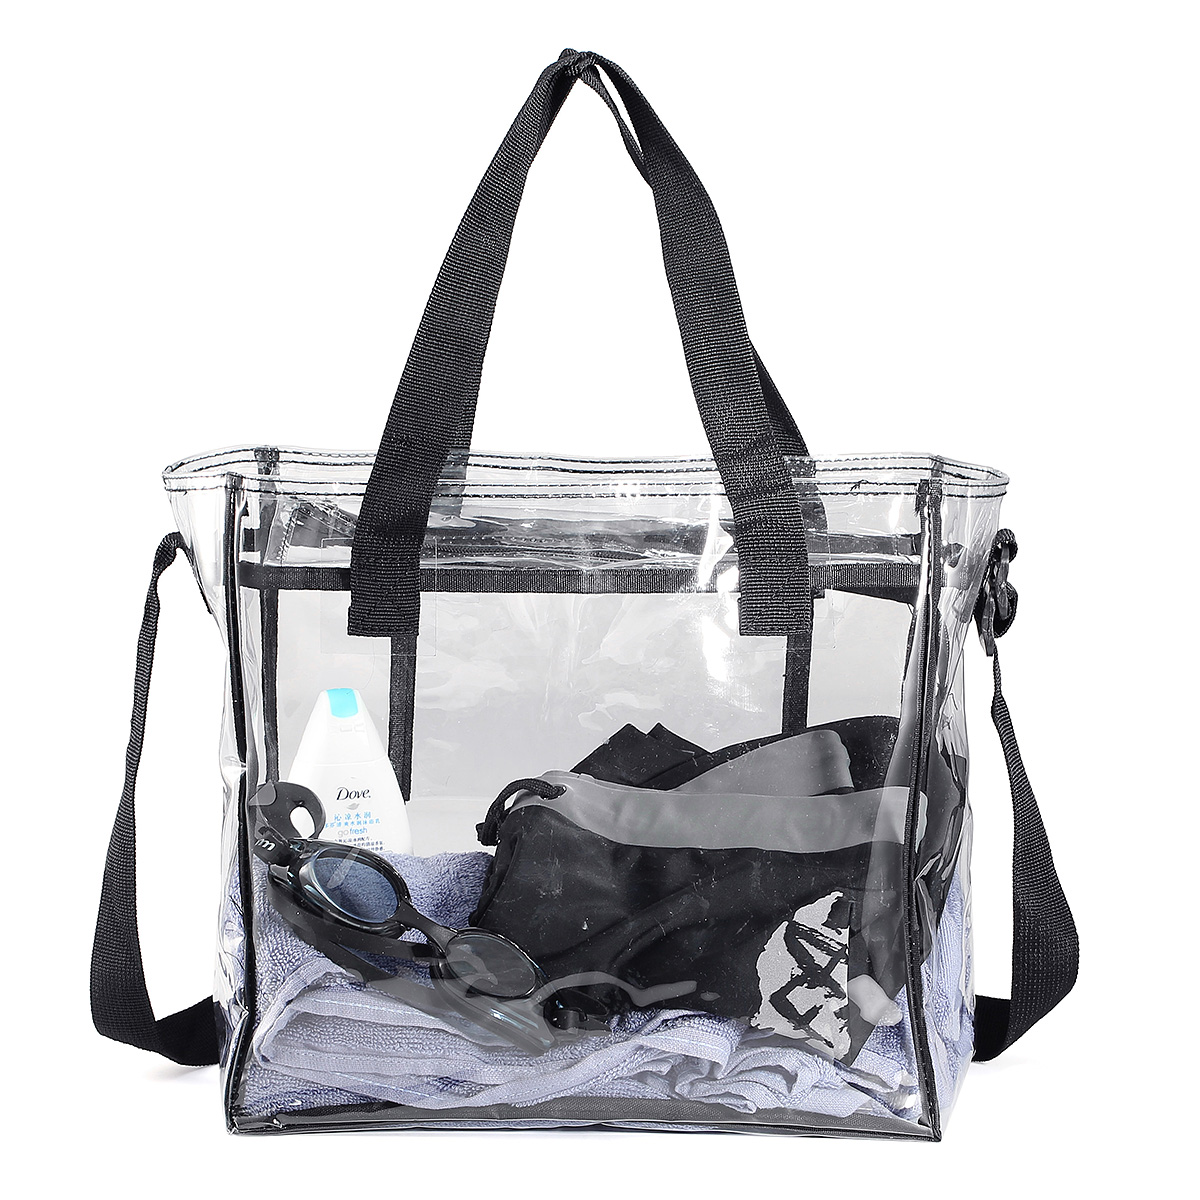 

KCASA KC-0628 Clear PVC Travel Storage Bag Waterproof Zipper Adjustable Gym Shoulder Bag